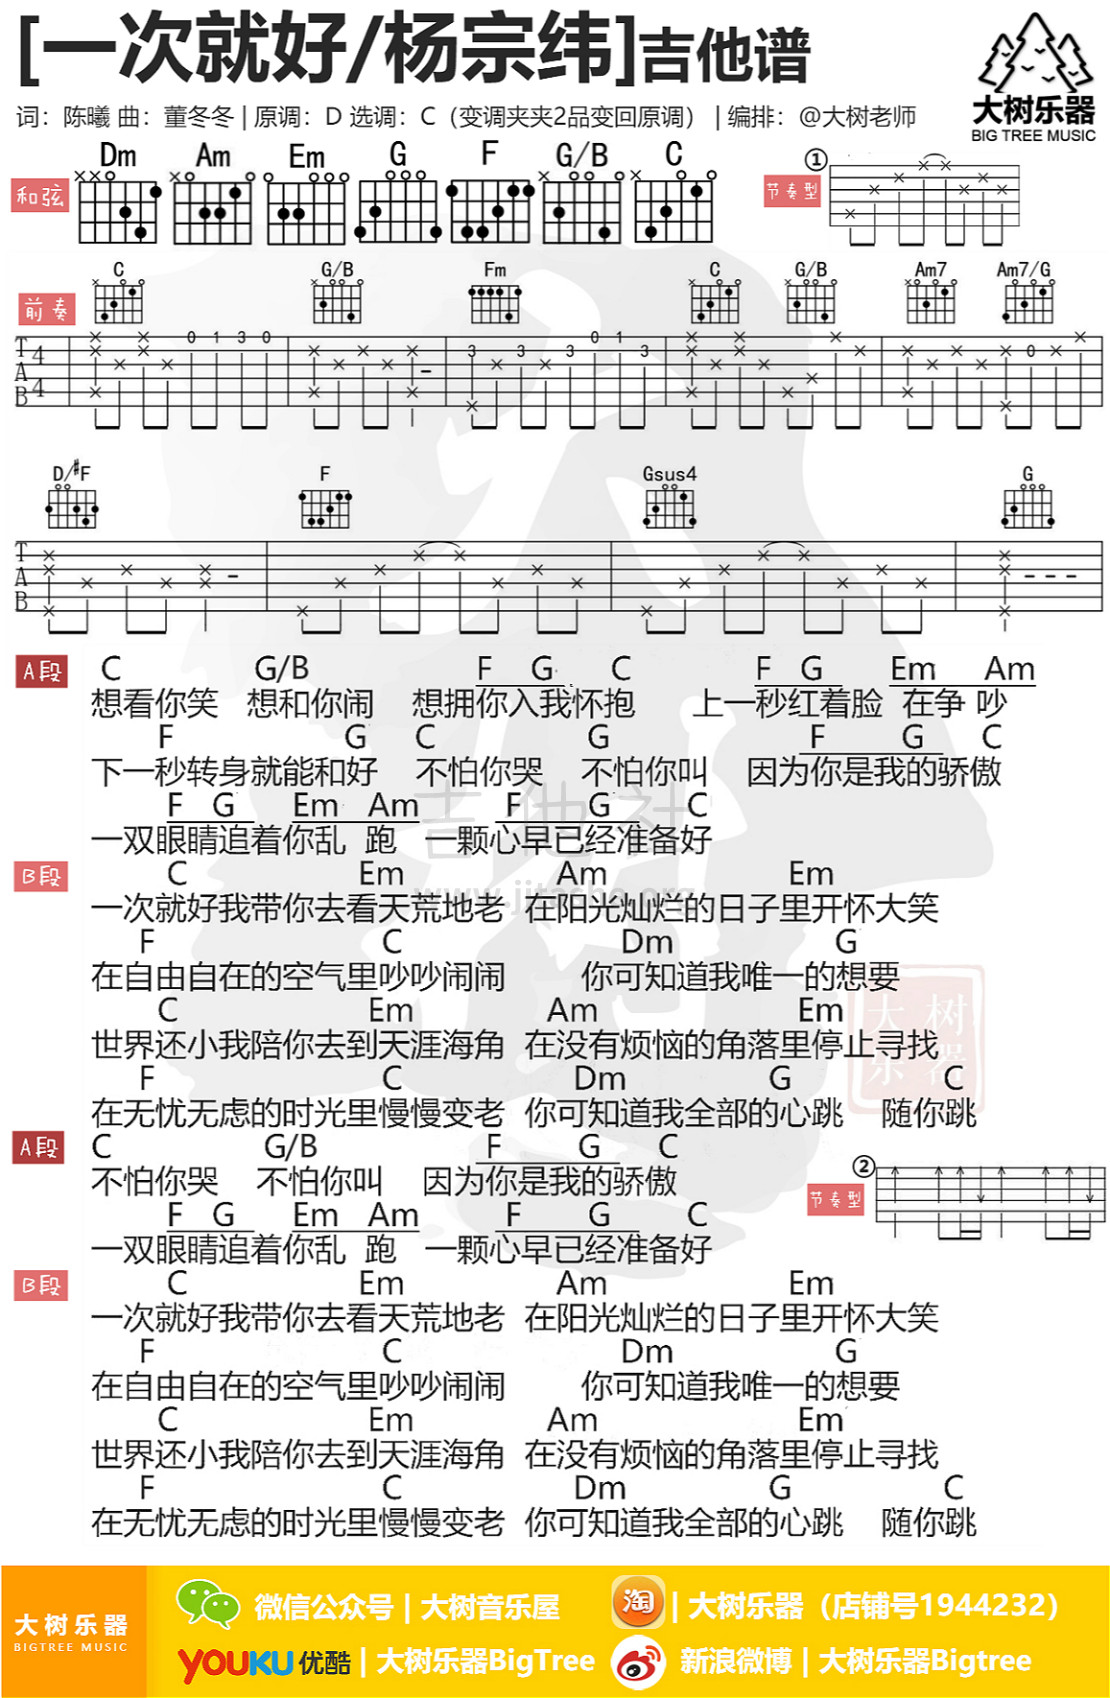 一次就好(吉他弹唱-大树乐器)吉他谱(图片谱,弹唱,伴奏,教学)_杨宗纬(Aska)_eitu_3_meitu_3.jpg